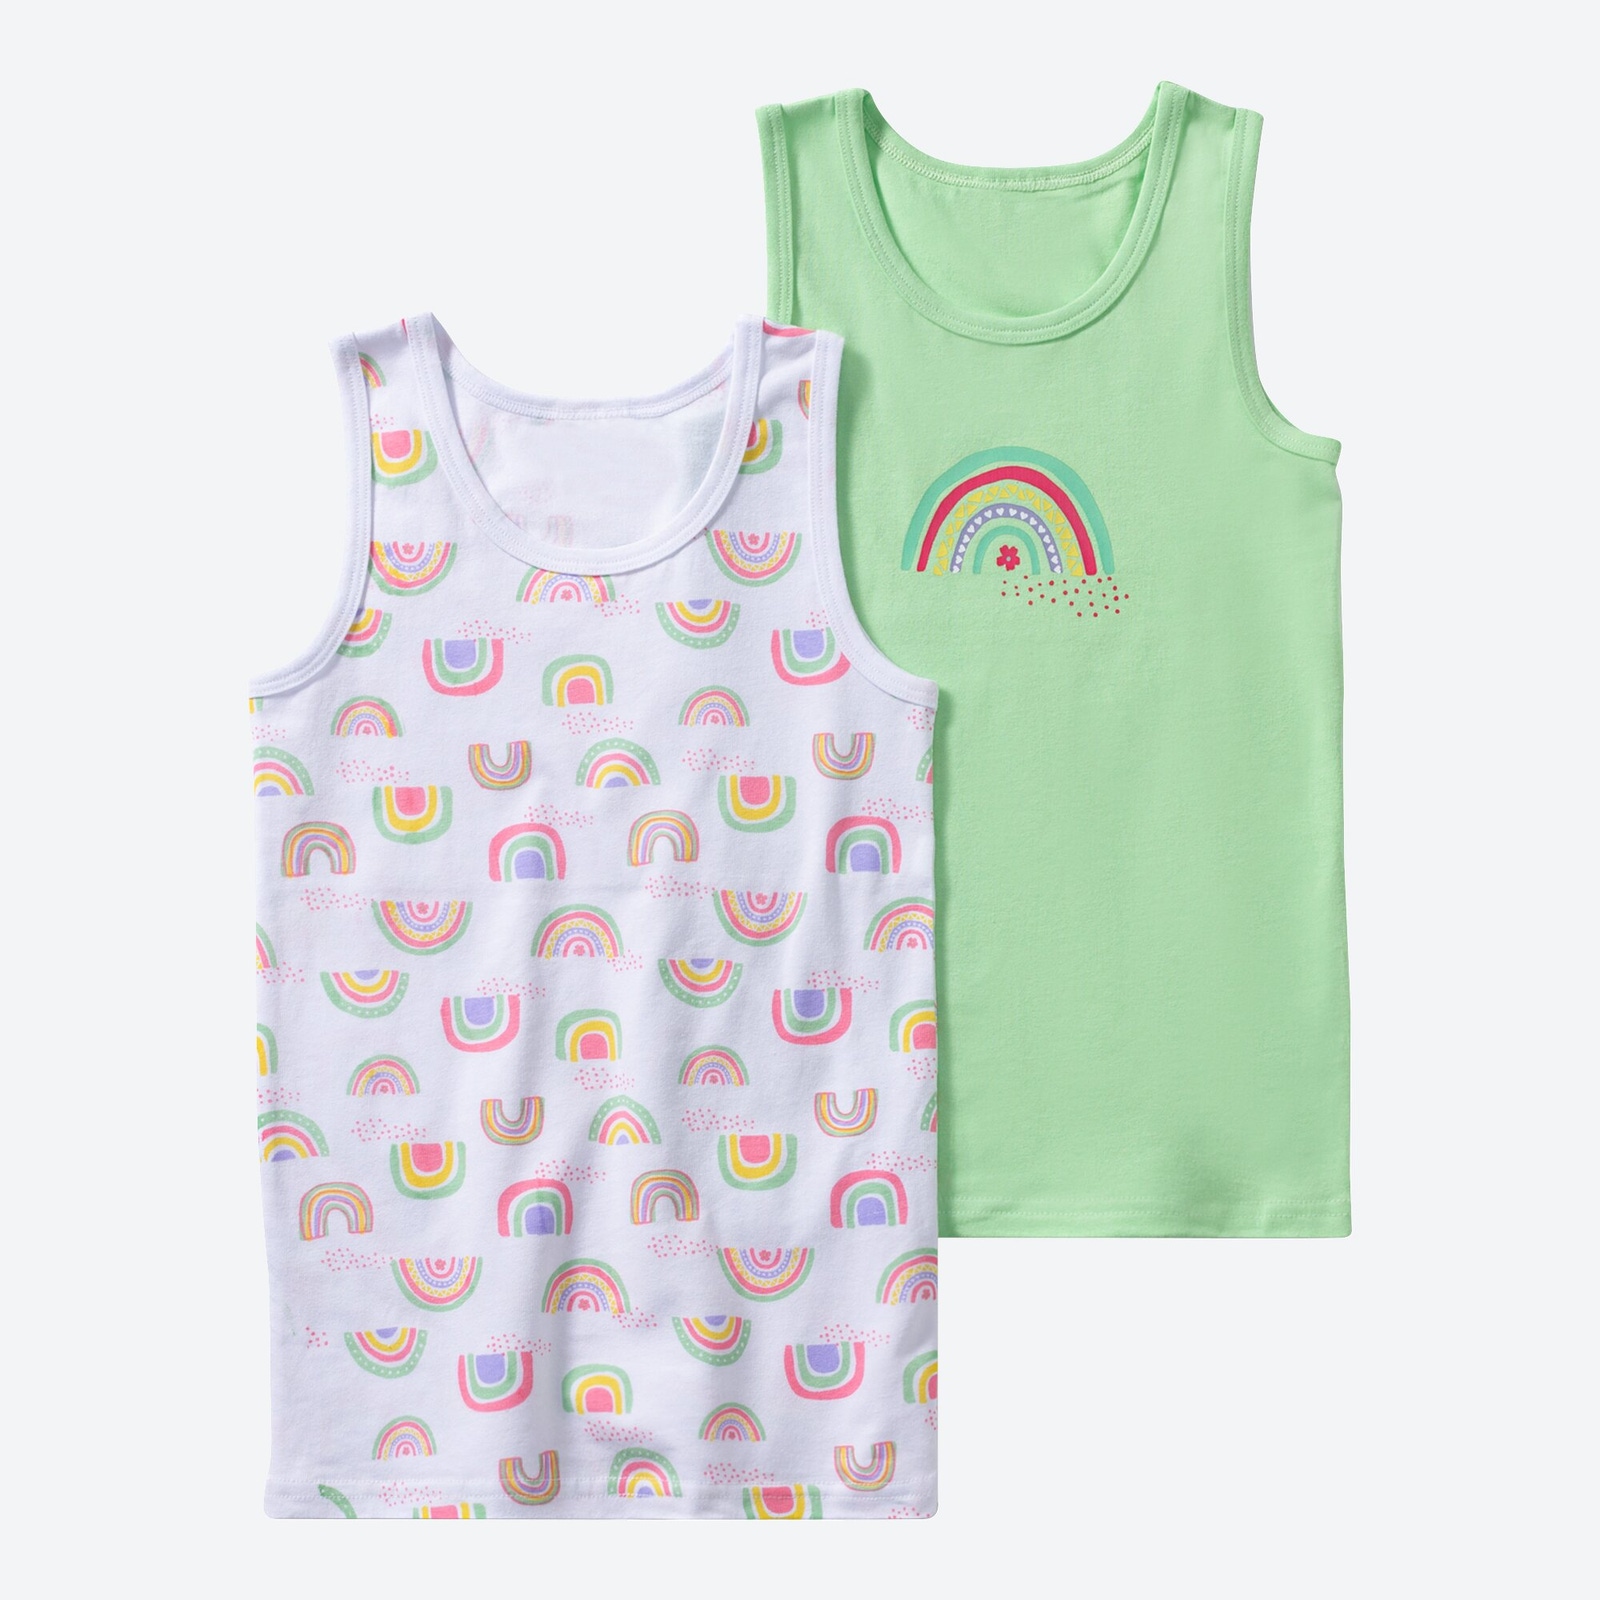 Mädchen-Unterhemd mit Regenbogen-Muster, 2er-Pack